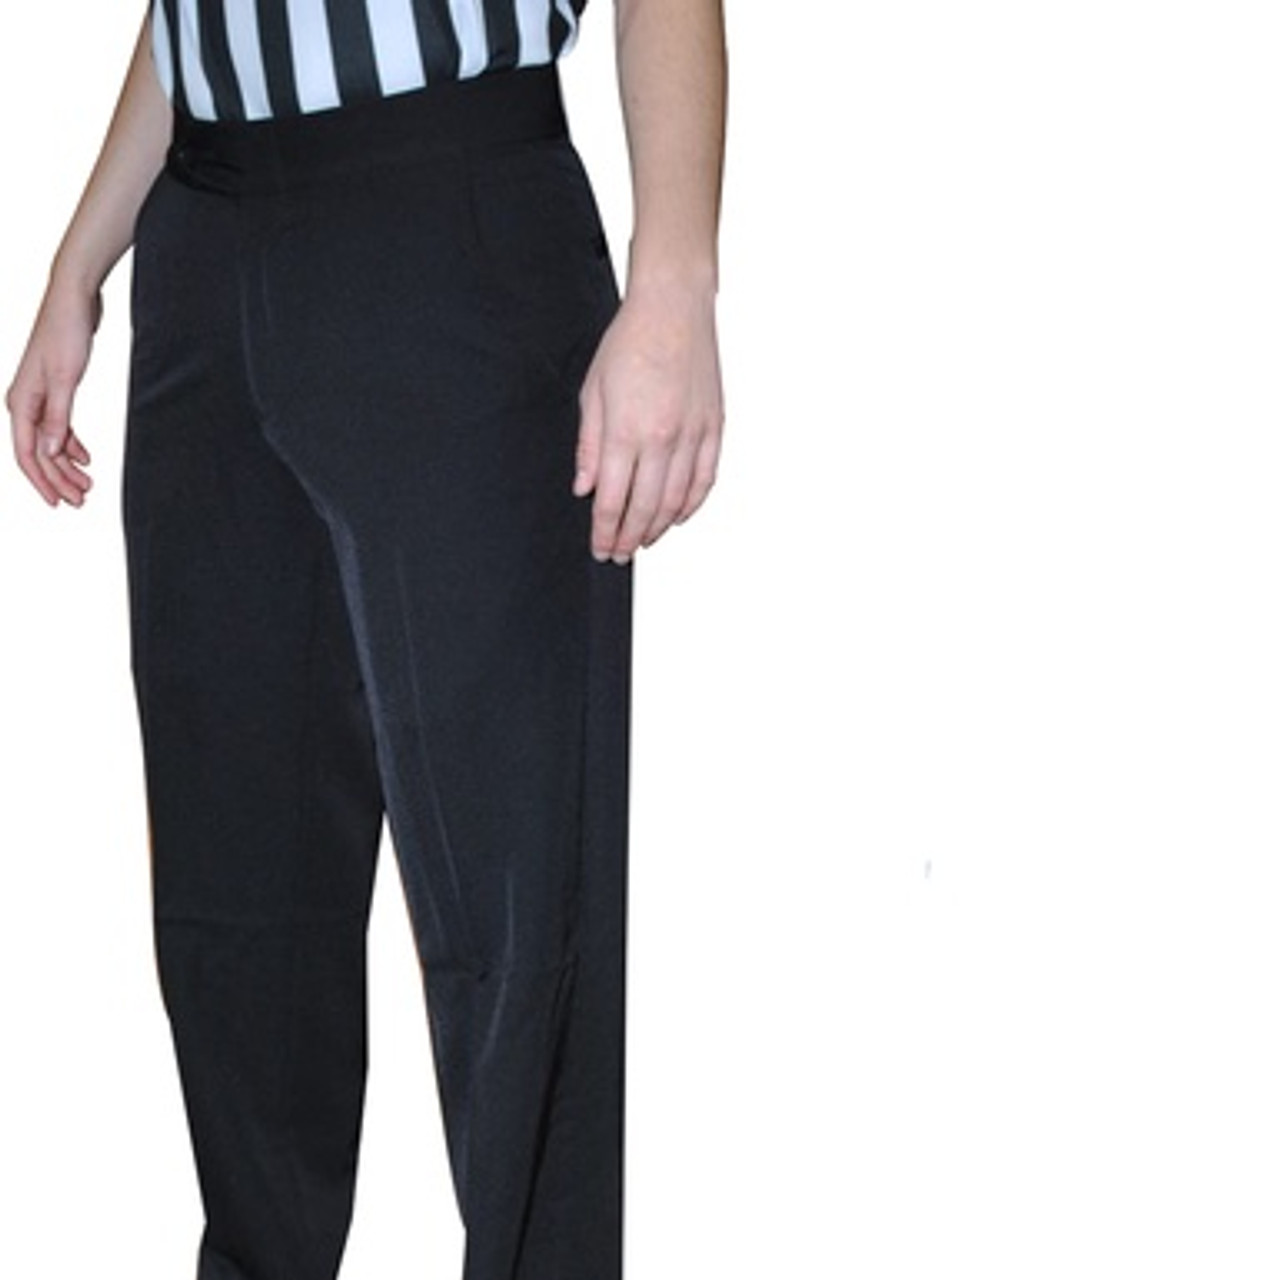 United Attire Basketball Referee Pants (Pleated, Slash Pocket, Regular Fit)